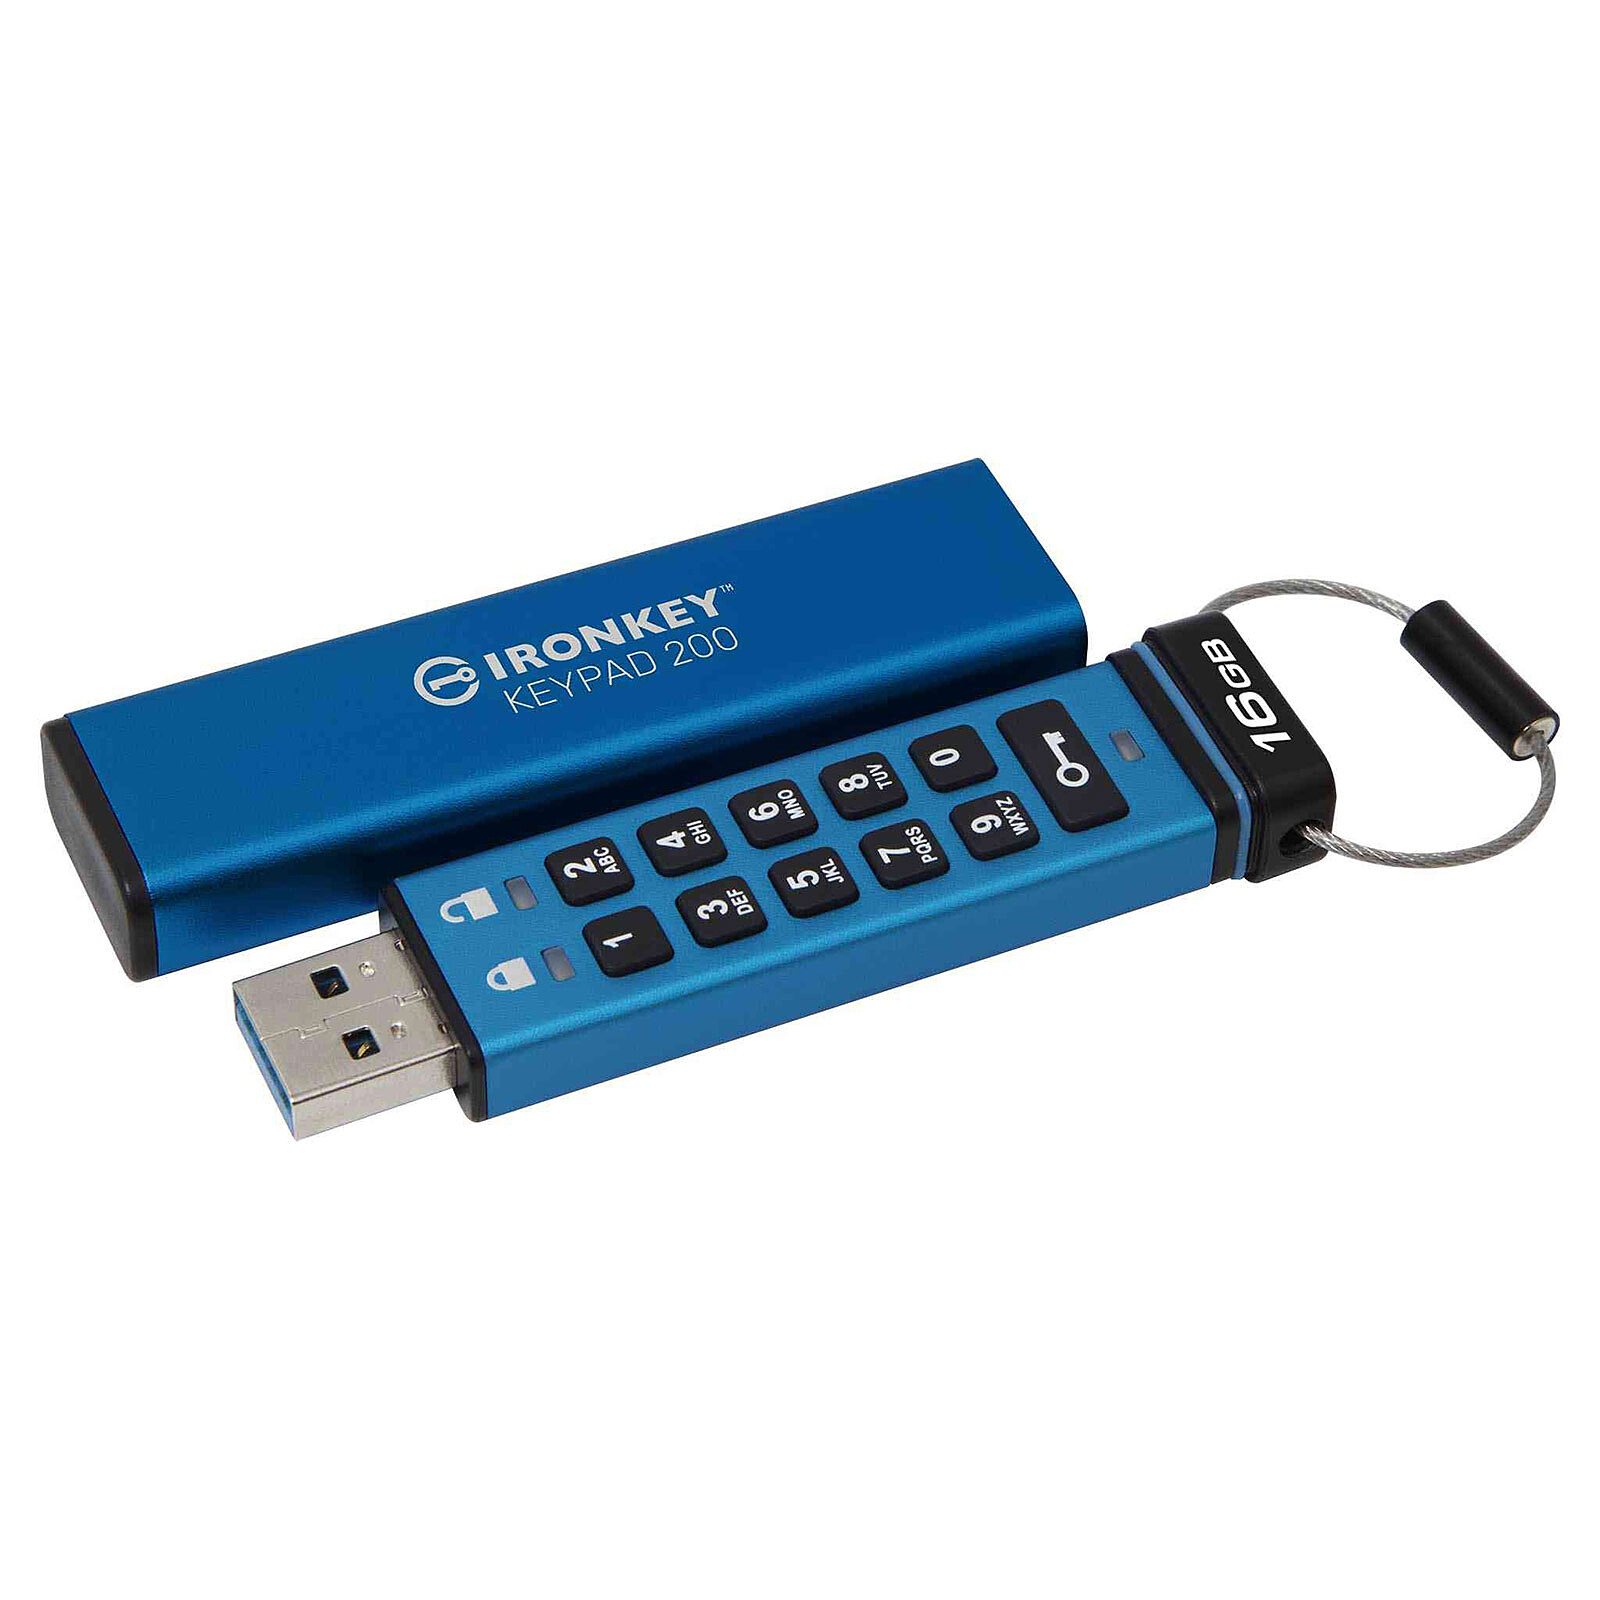 SanDisk Clé Ultra USB 3.0 16 Go - Clé USB - LDLC